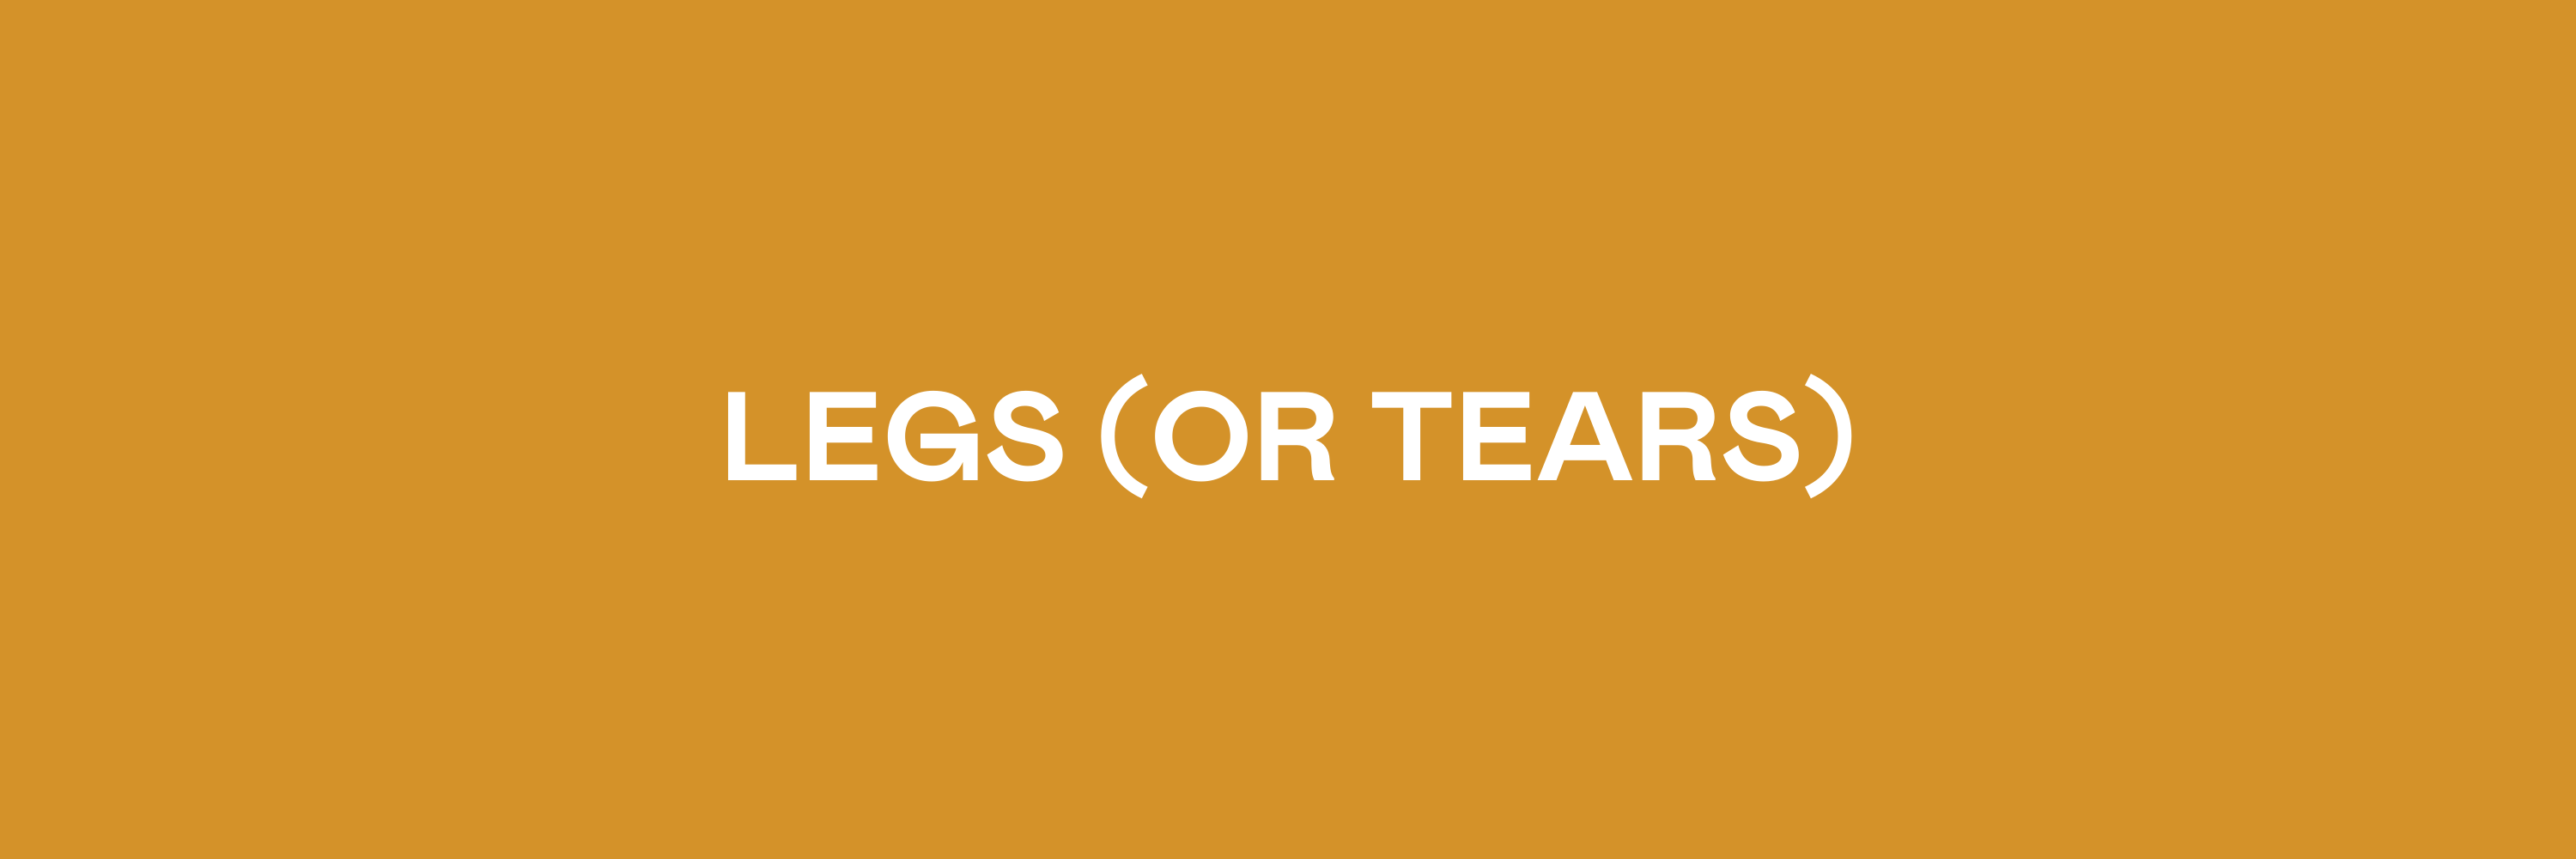 Legs (or Tears)